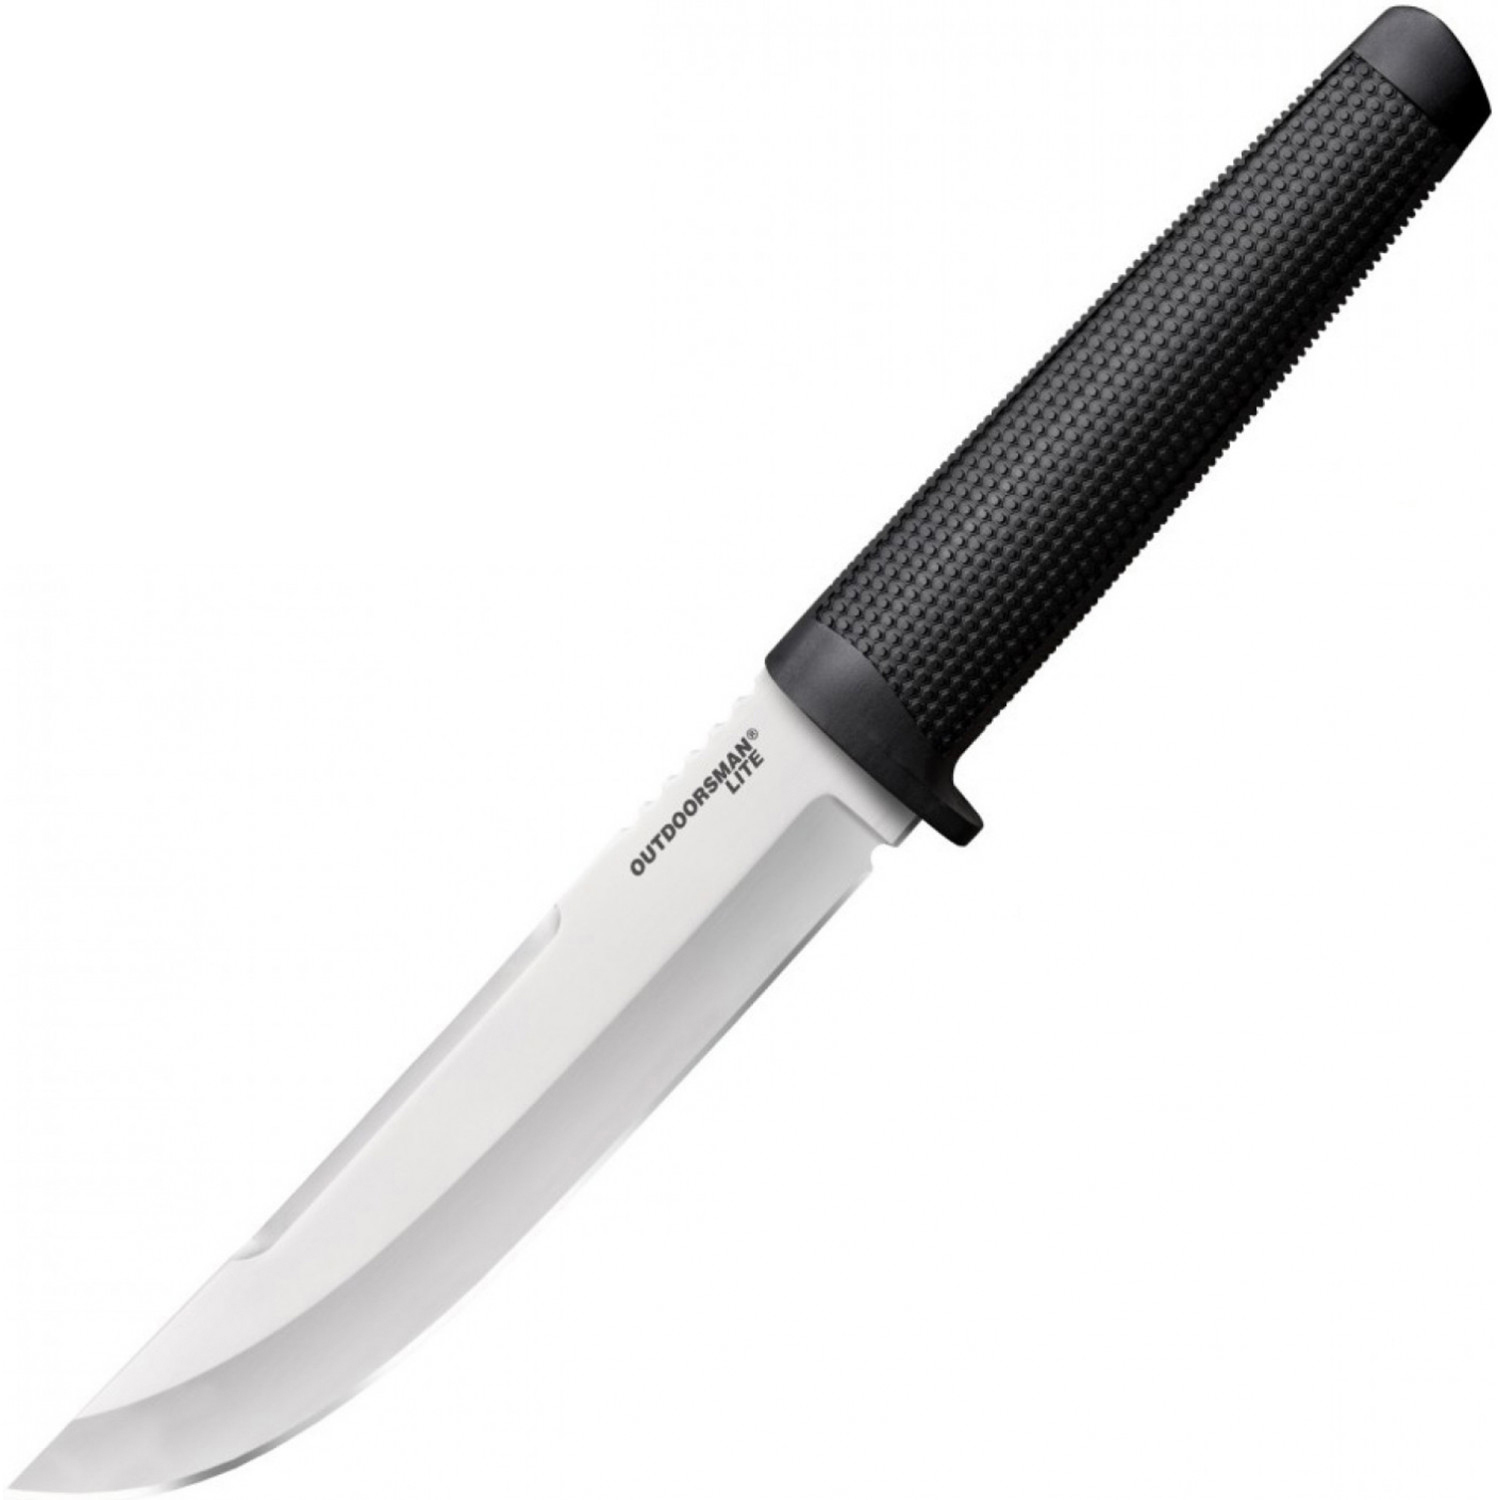 Нож с фиксированным клинком Cold Steel Outdoorsman Lite, сталь 1.4116, рукоять полипропилен, black нож кухонный chef s knife рукоять kray ex черная сталь german 4116 25см